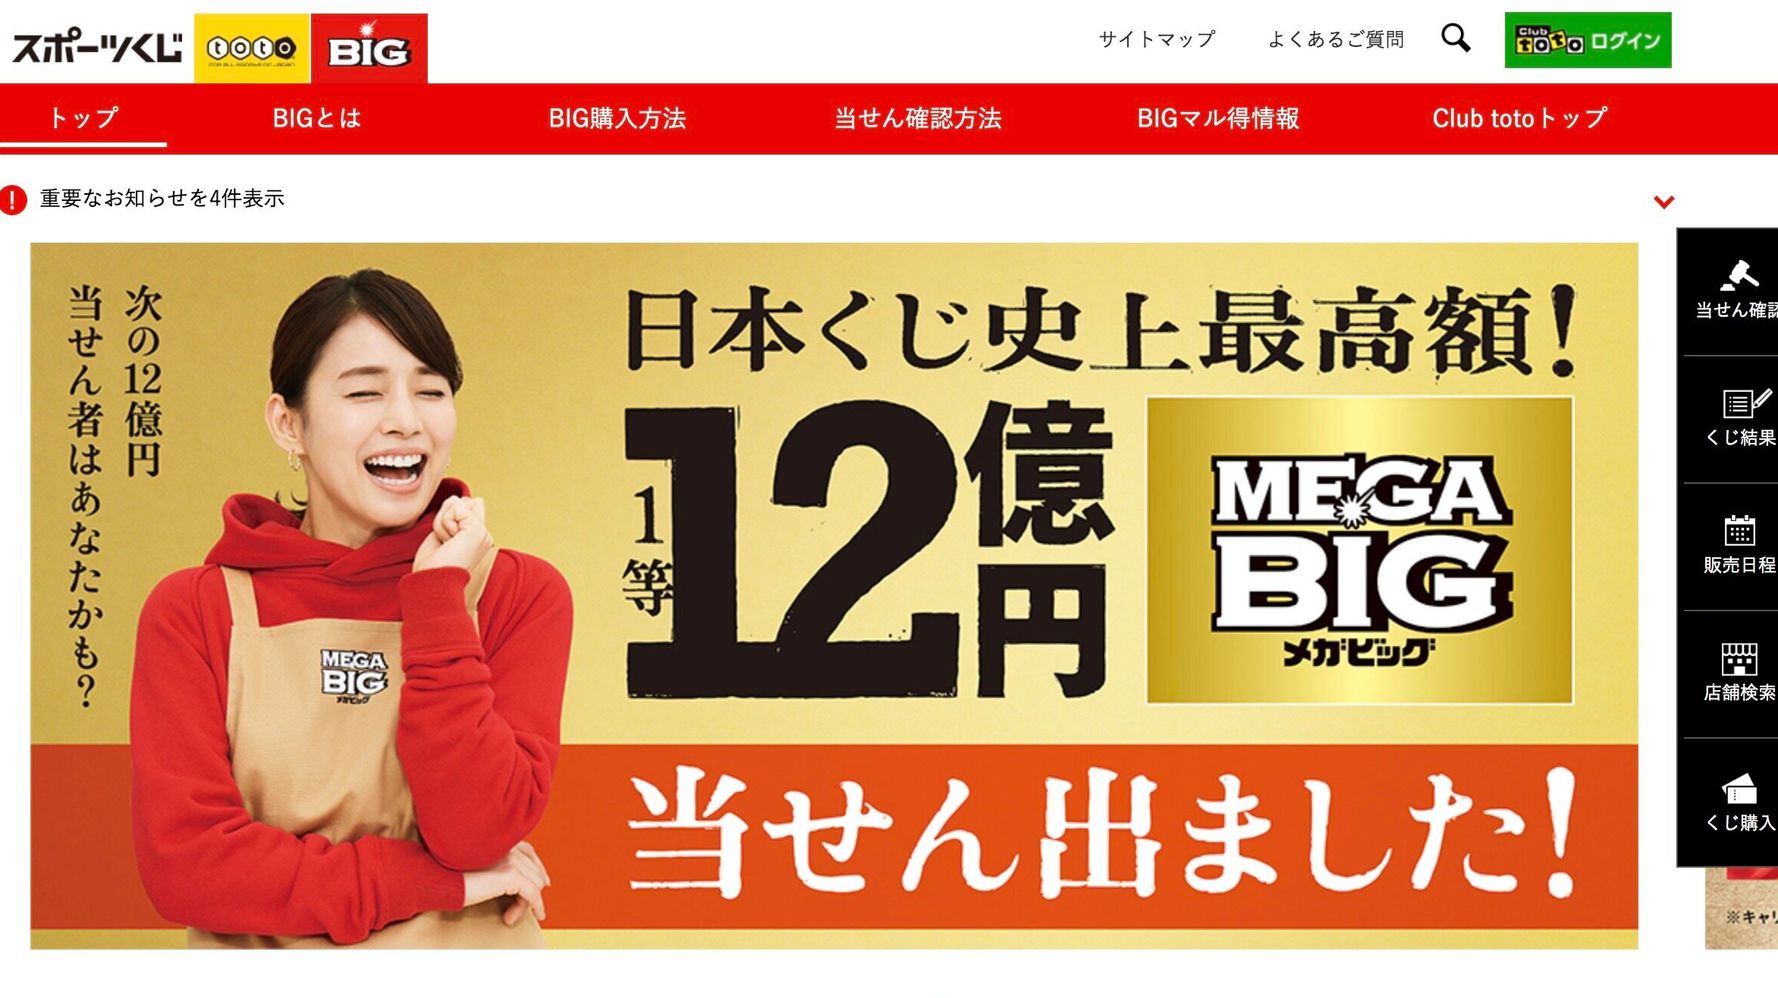 メガビッグ とは 日本のくじ史上最高額 12億円 ついに出る ハフポスト